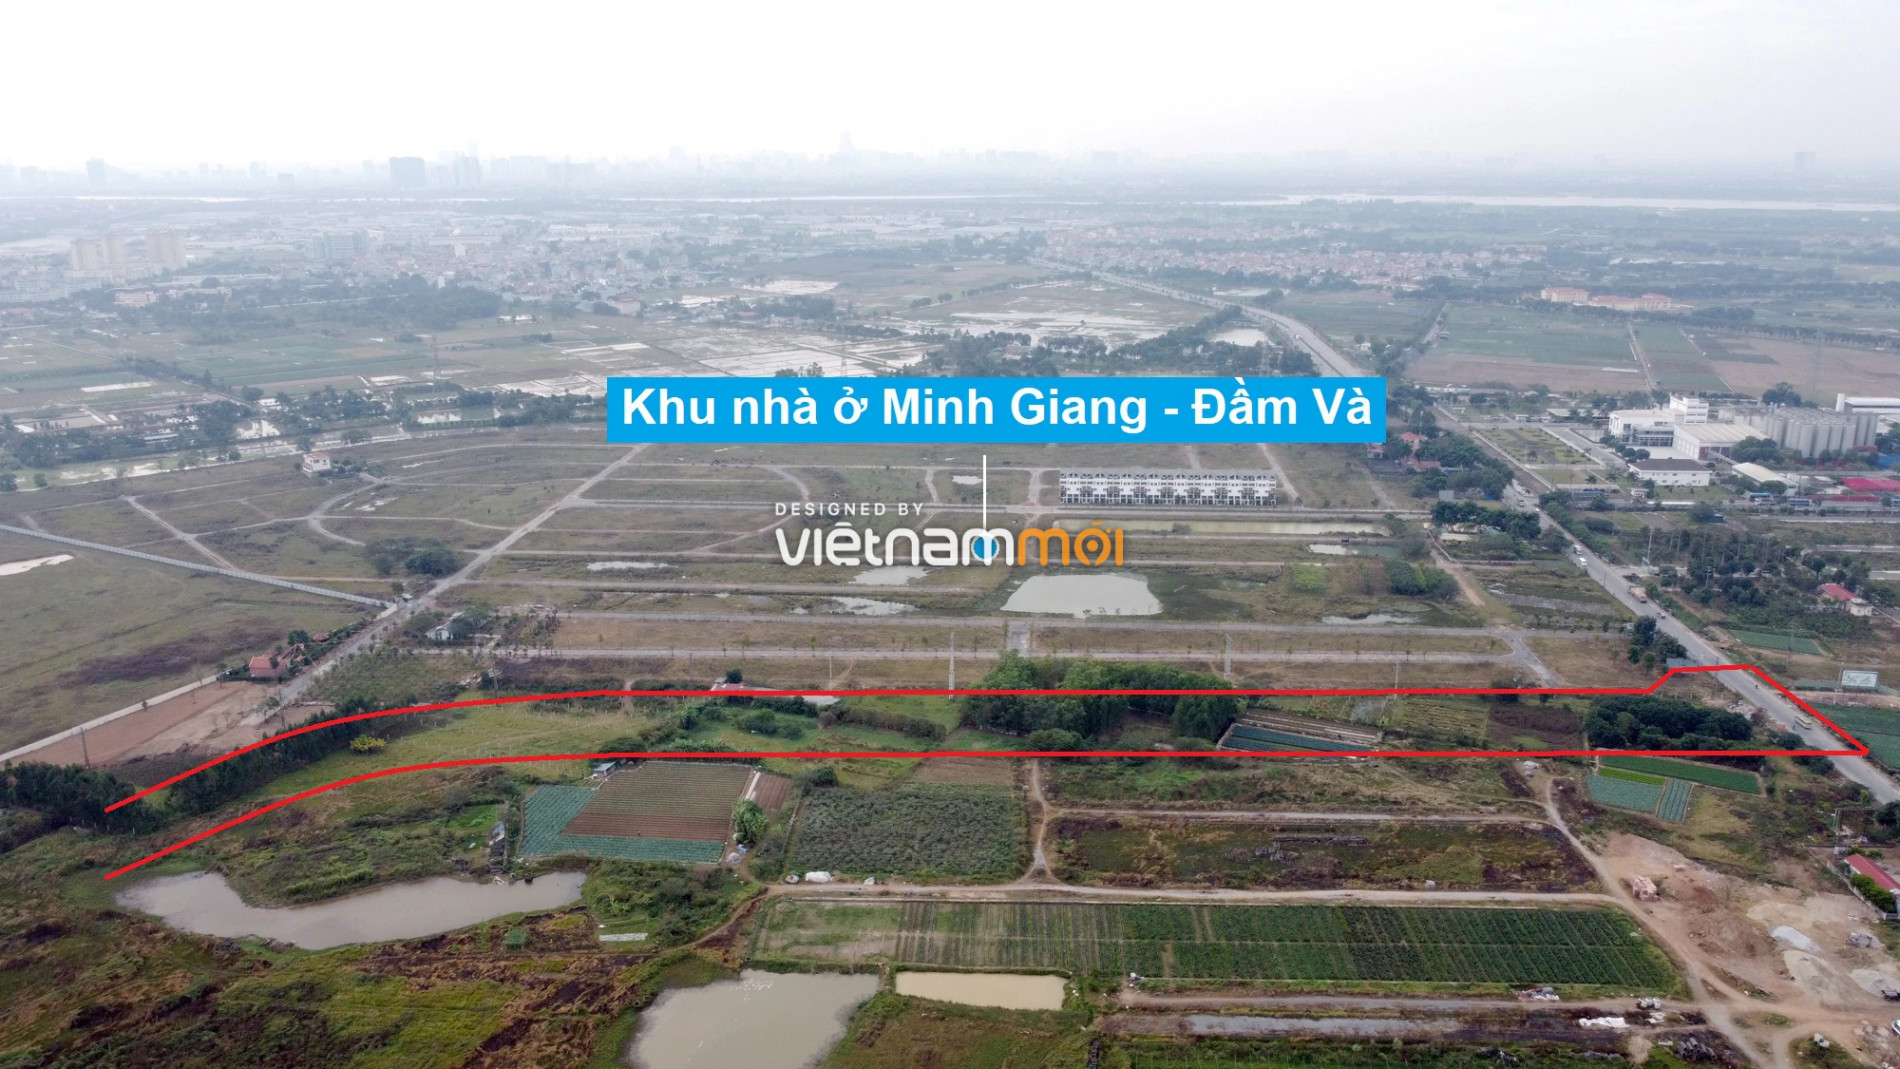 Những khu đất sắp thu hồi để mở đường ở xã Tiền Phong, Mê Linh, Hà Nội (phần 1) - Ảnh 11.